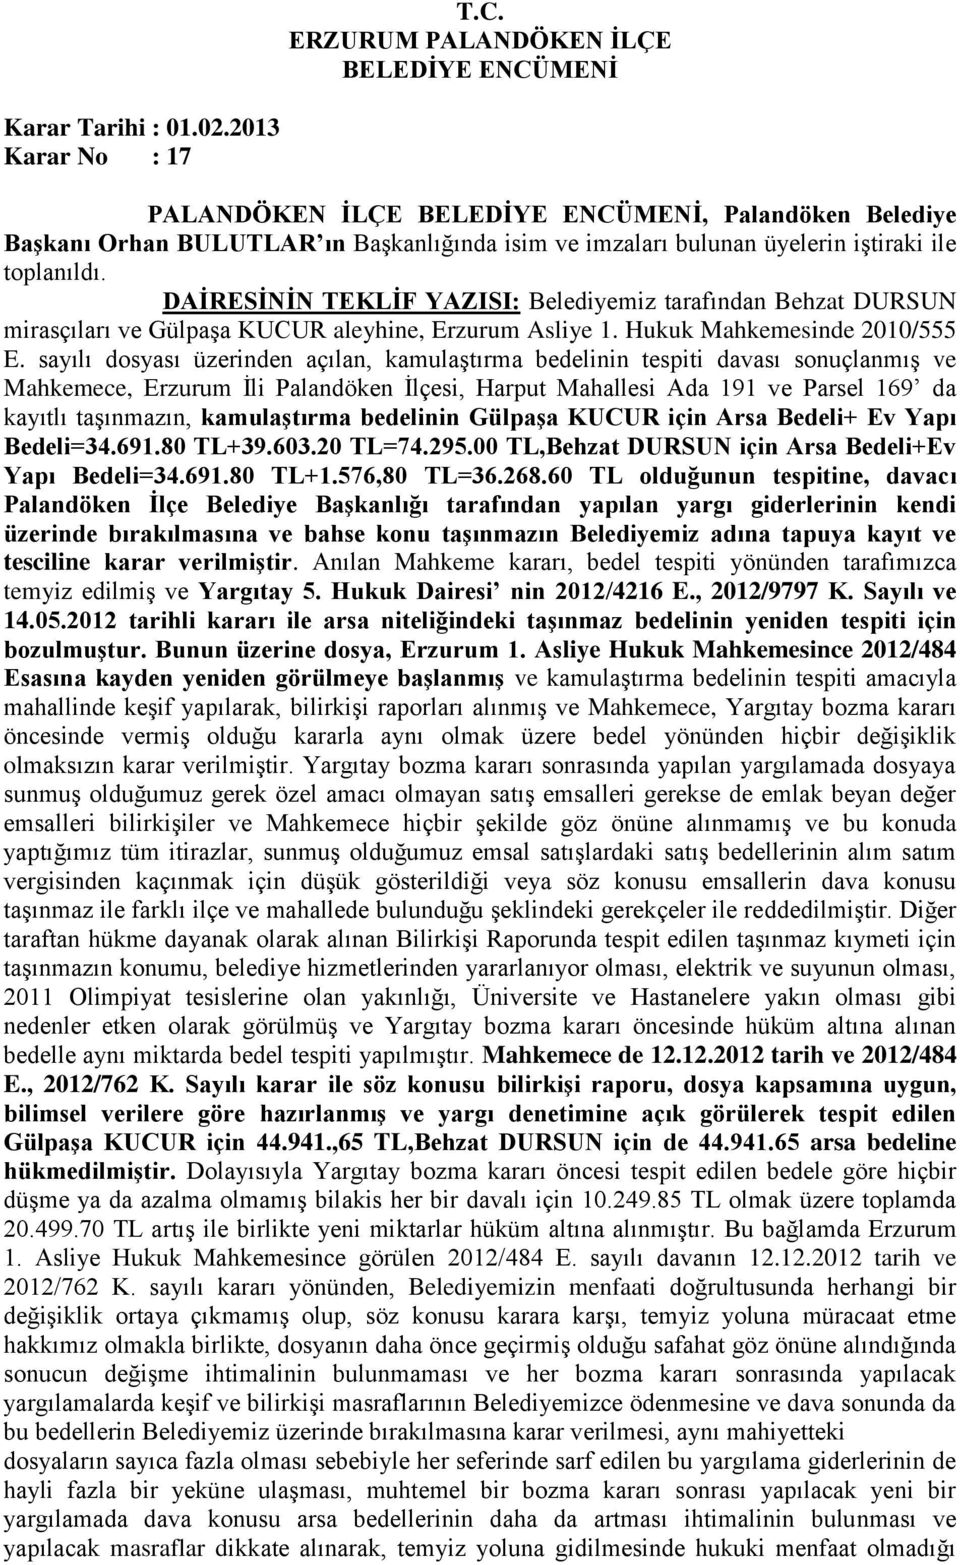 DURSUN mirasçıları ve Gülpaşa KUCUR aleyhine, Erzurum Asliye 1. Hukuk Mahkemesinde 2010/555 E.